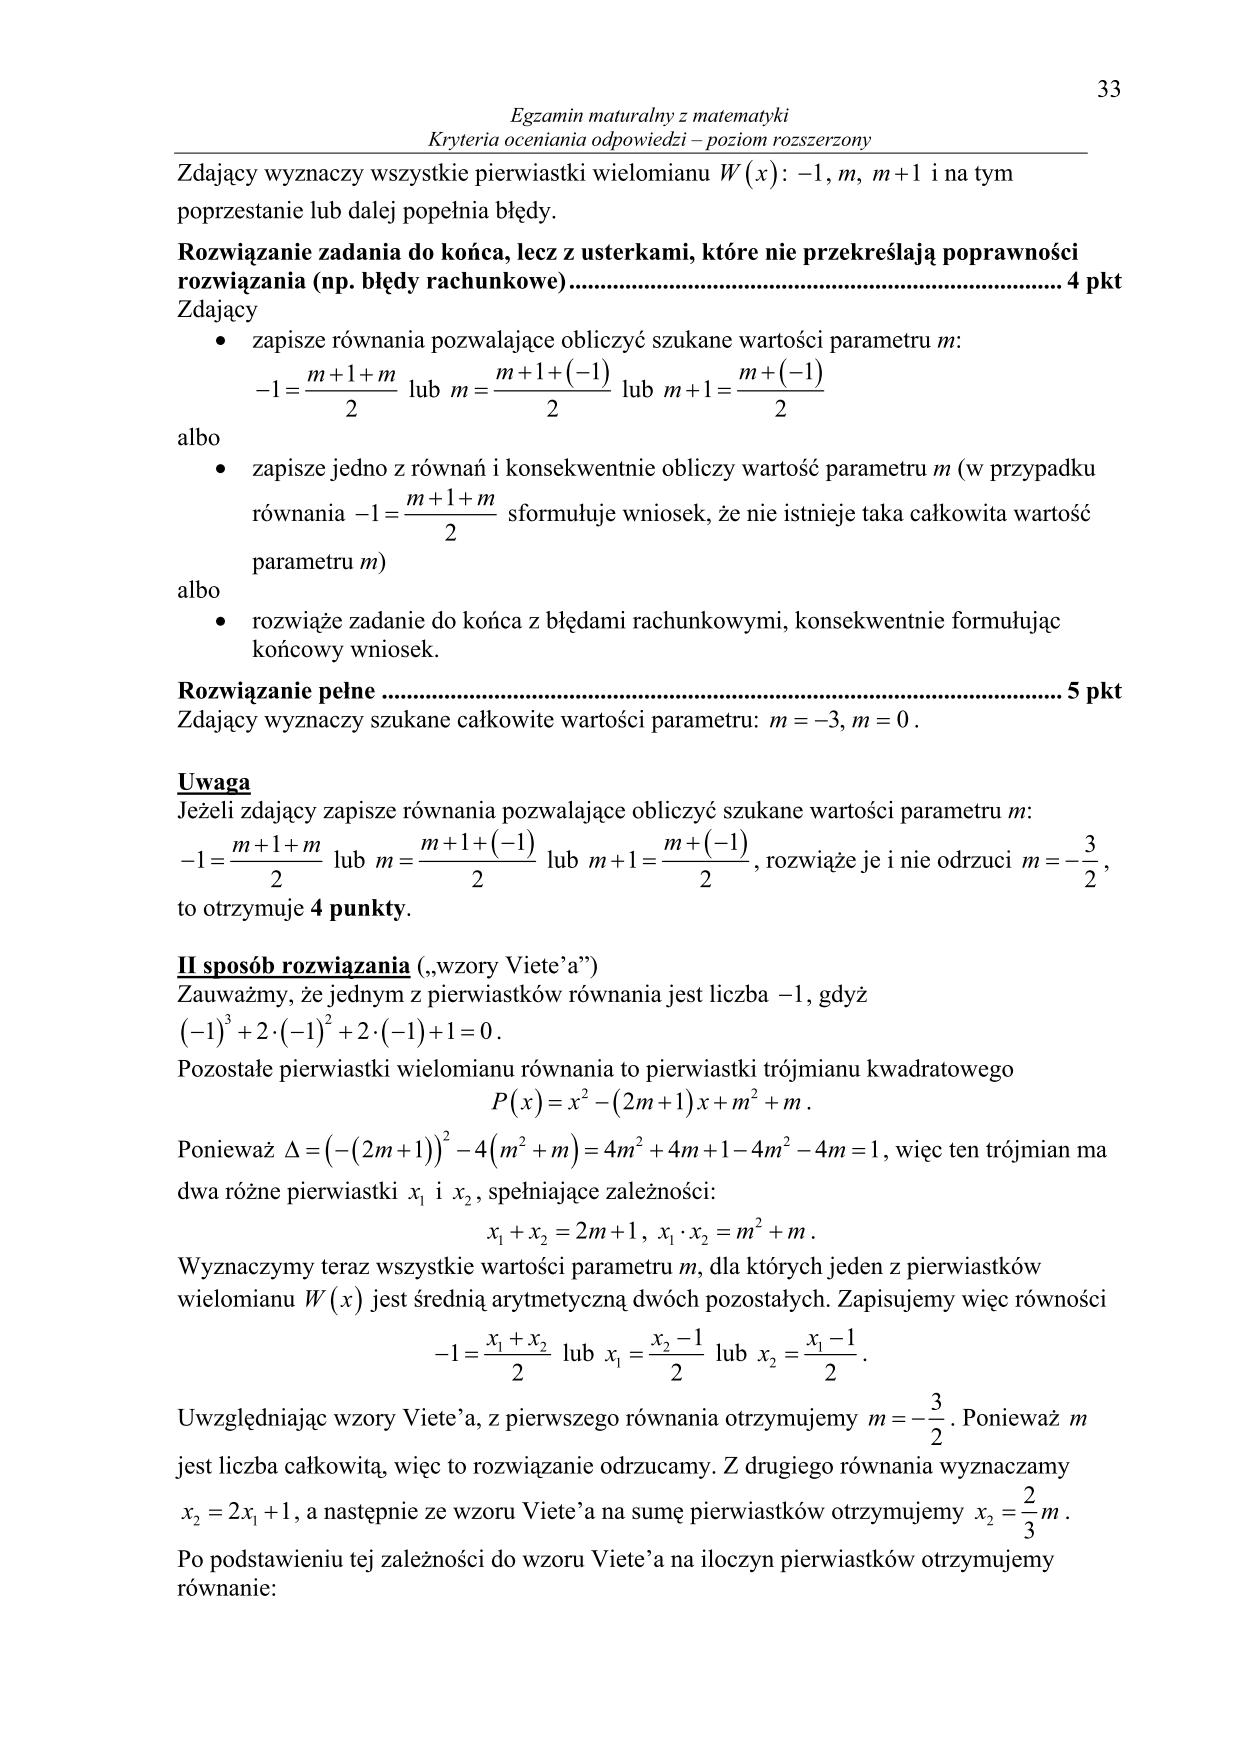 odpowiedzi-matematyka-poziom-rozszerzony-matura-2014-33